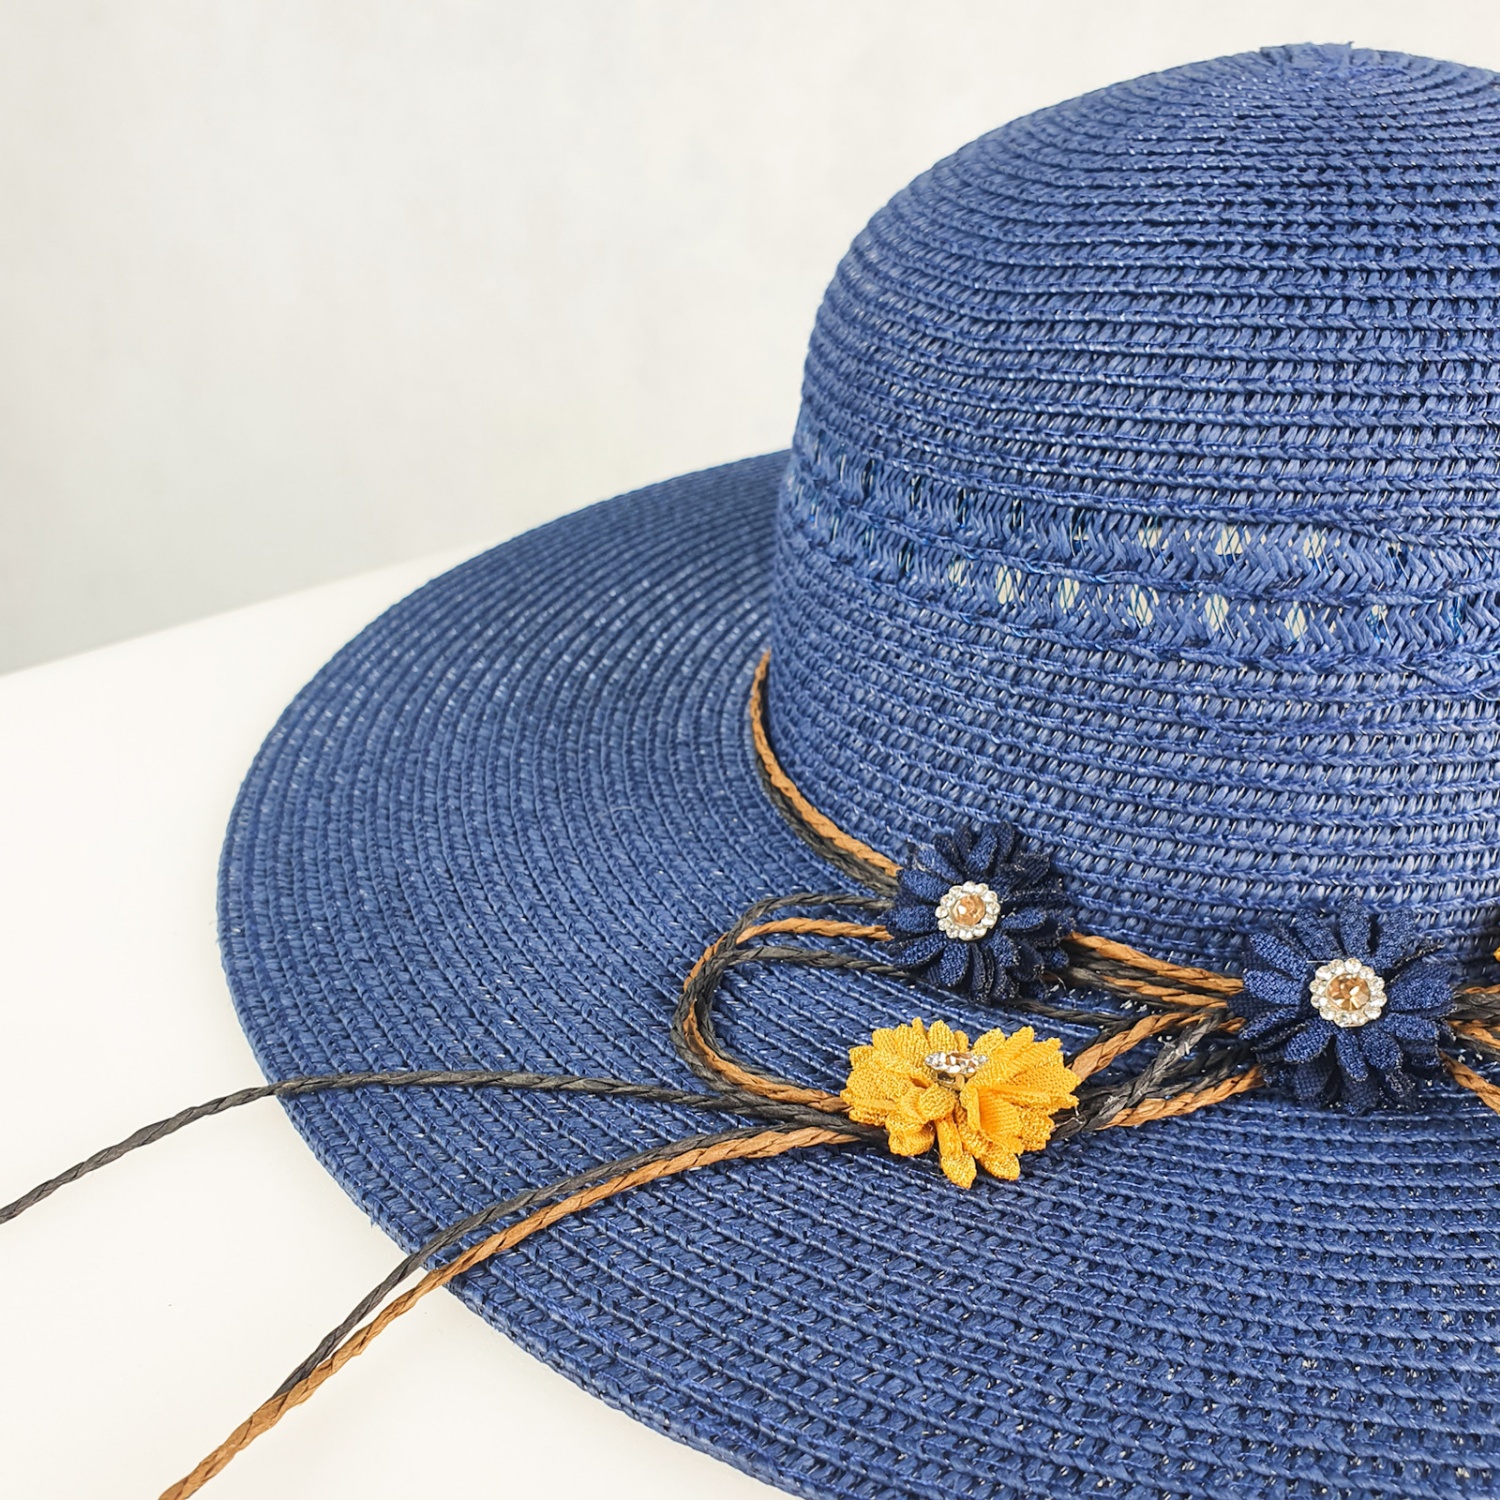 lily kapelusz damski slomkowy niebieski dodatki plazowe okrycie glowy polski producent lavel 2023 detal.jpg